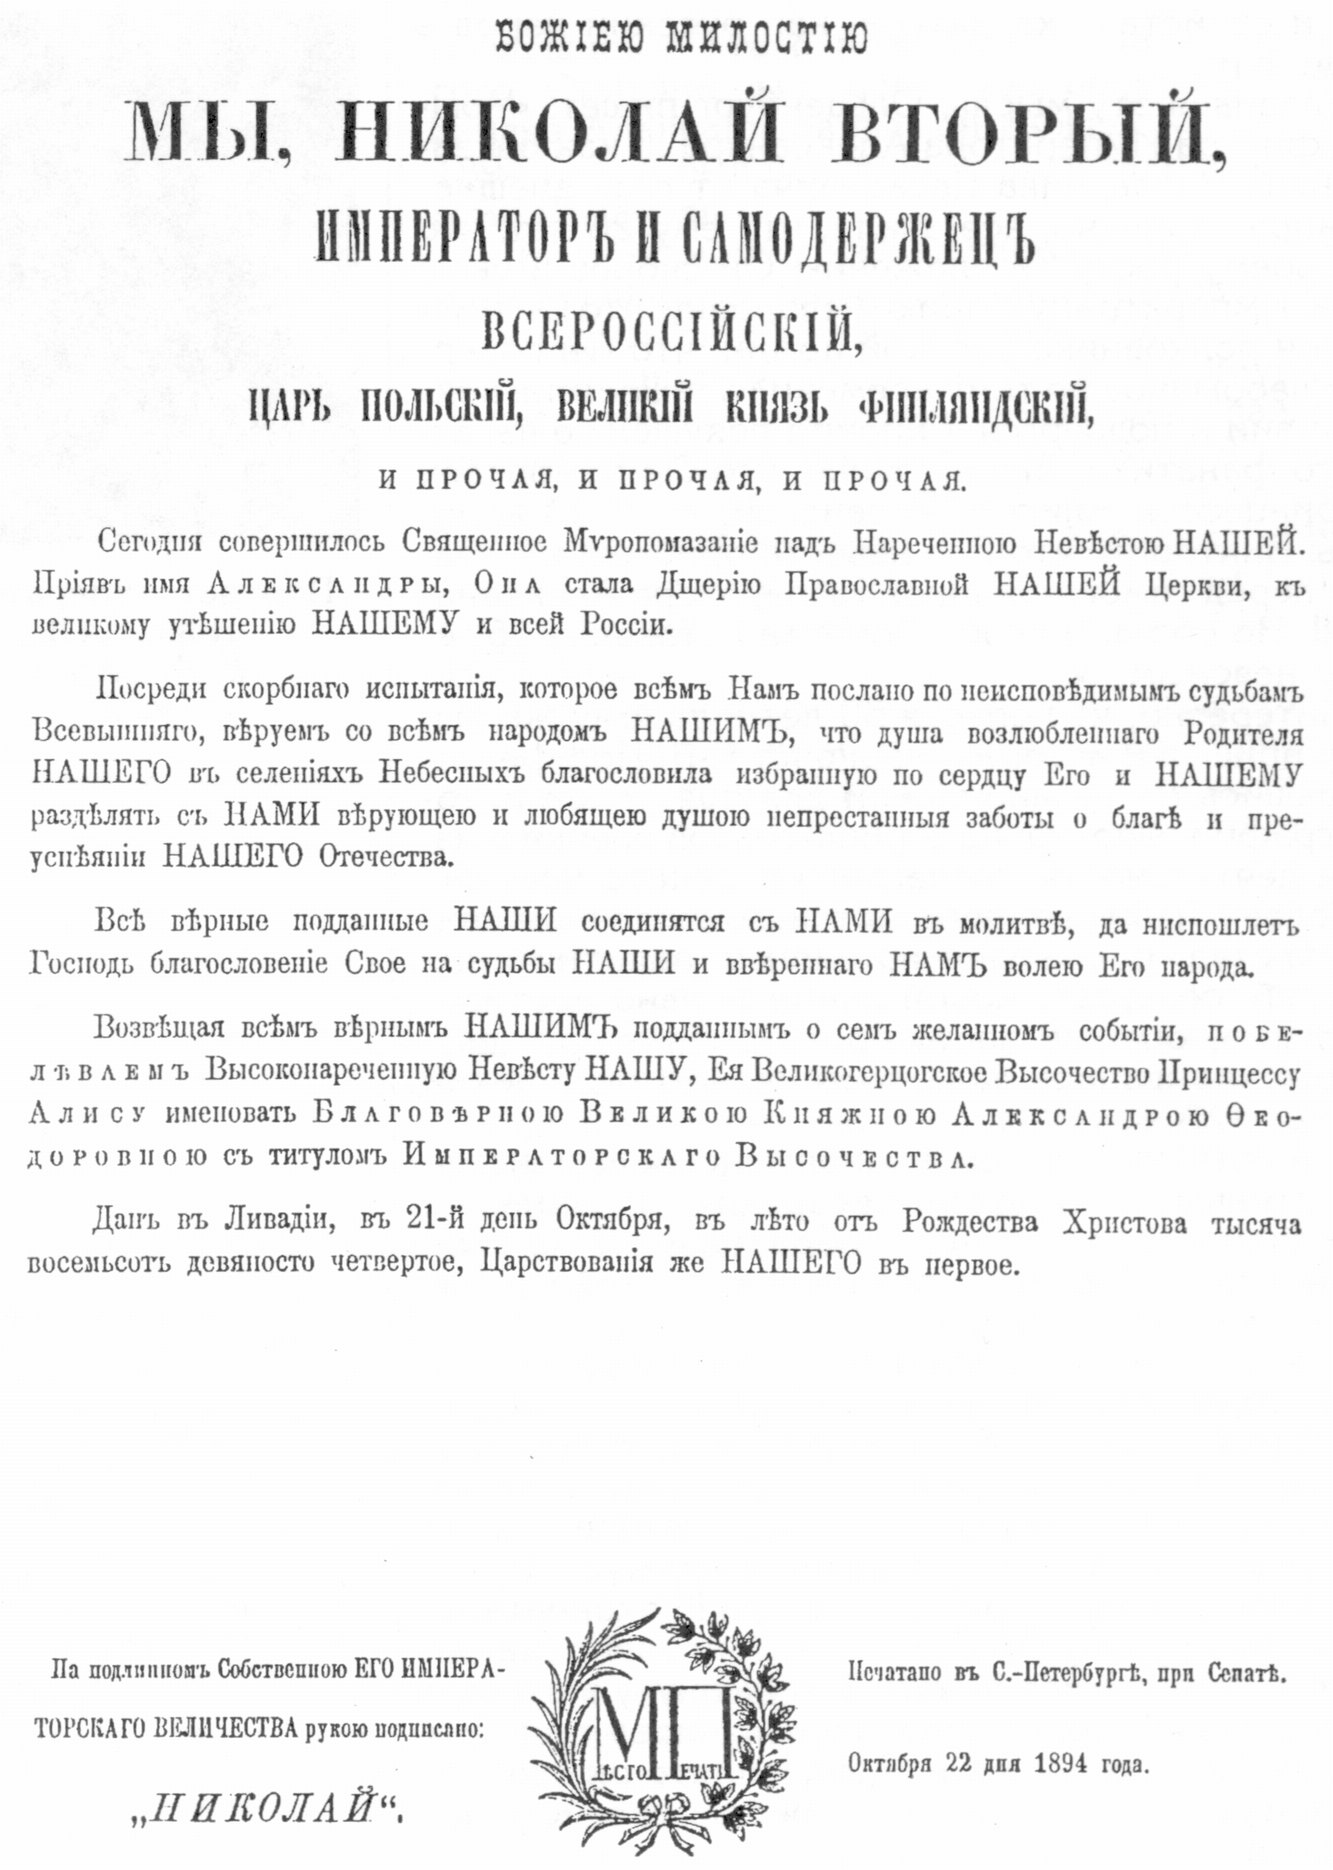 Манифест Николая II о принятии православия принцессой Алисой Гессенской, наречении ее именем Александра Федоровна с титулом великая княжна